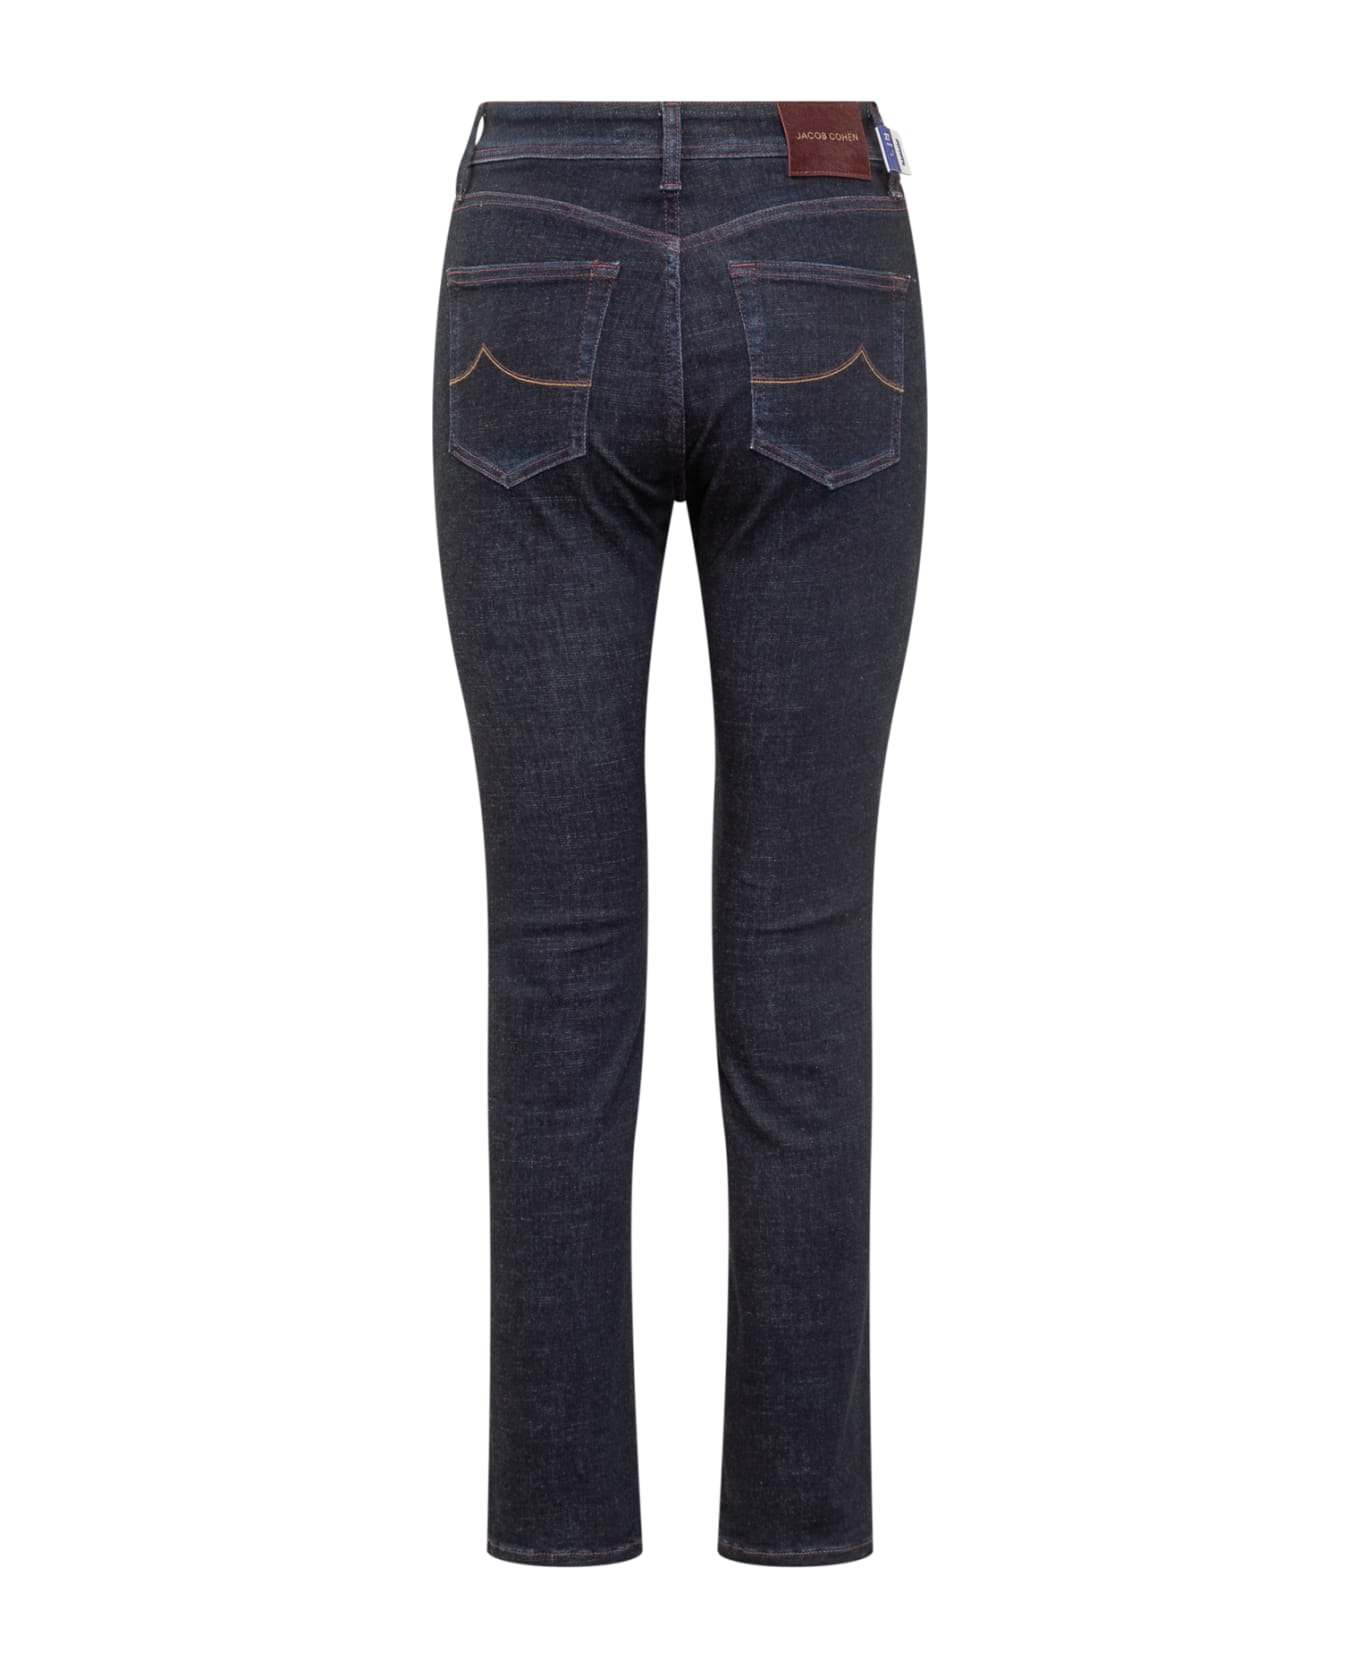 Jacob Cohen Olivia Slim Jeans - DENIM ZZJV0239